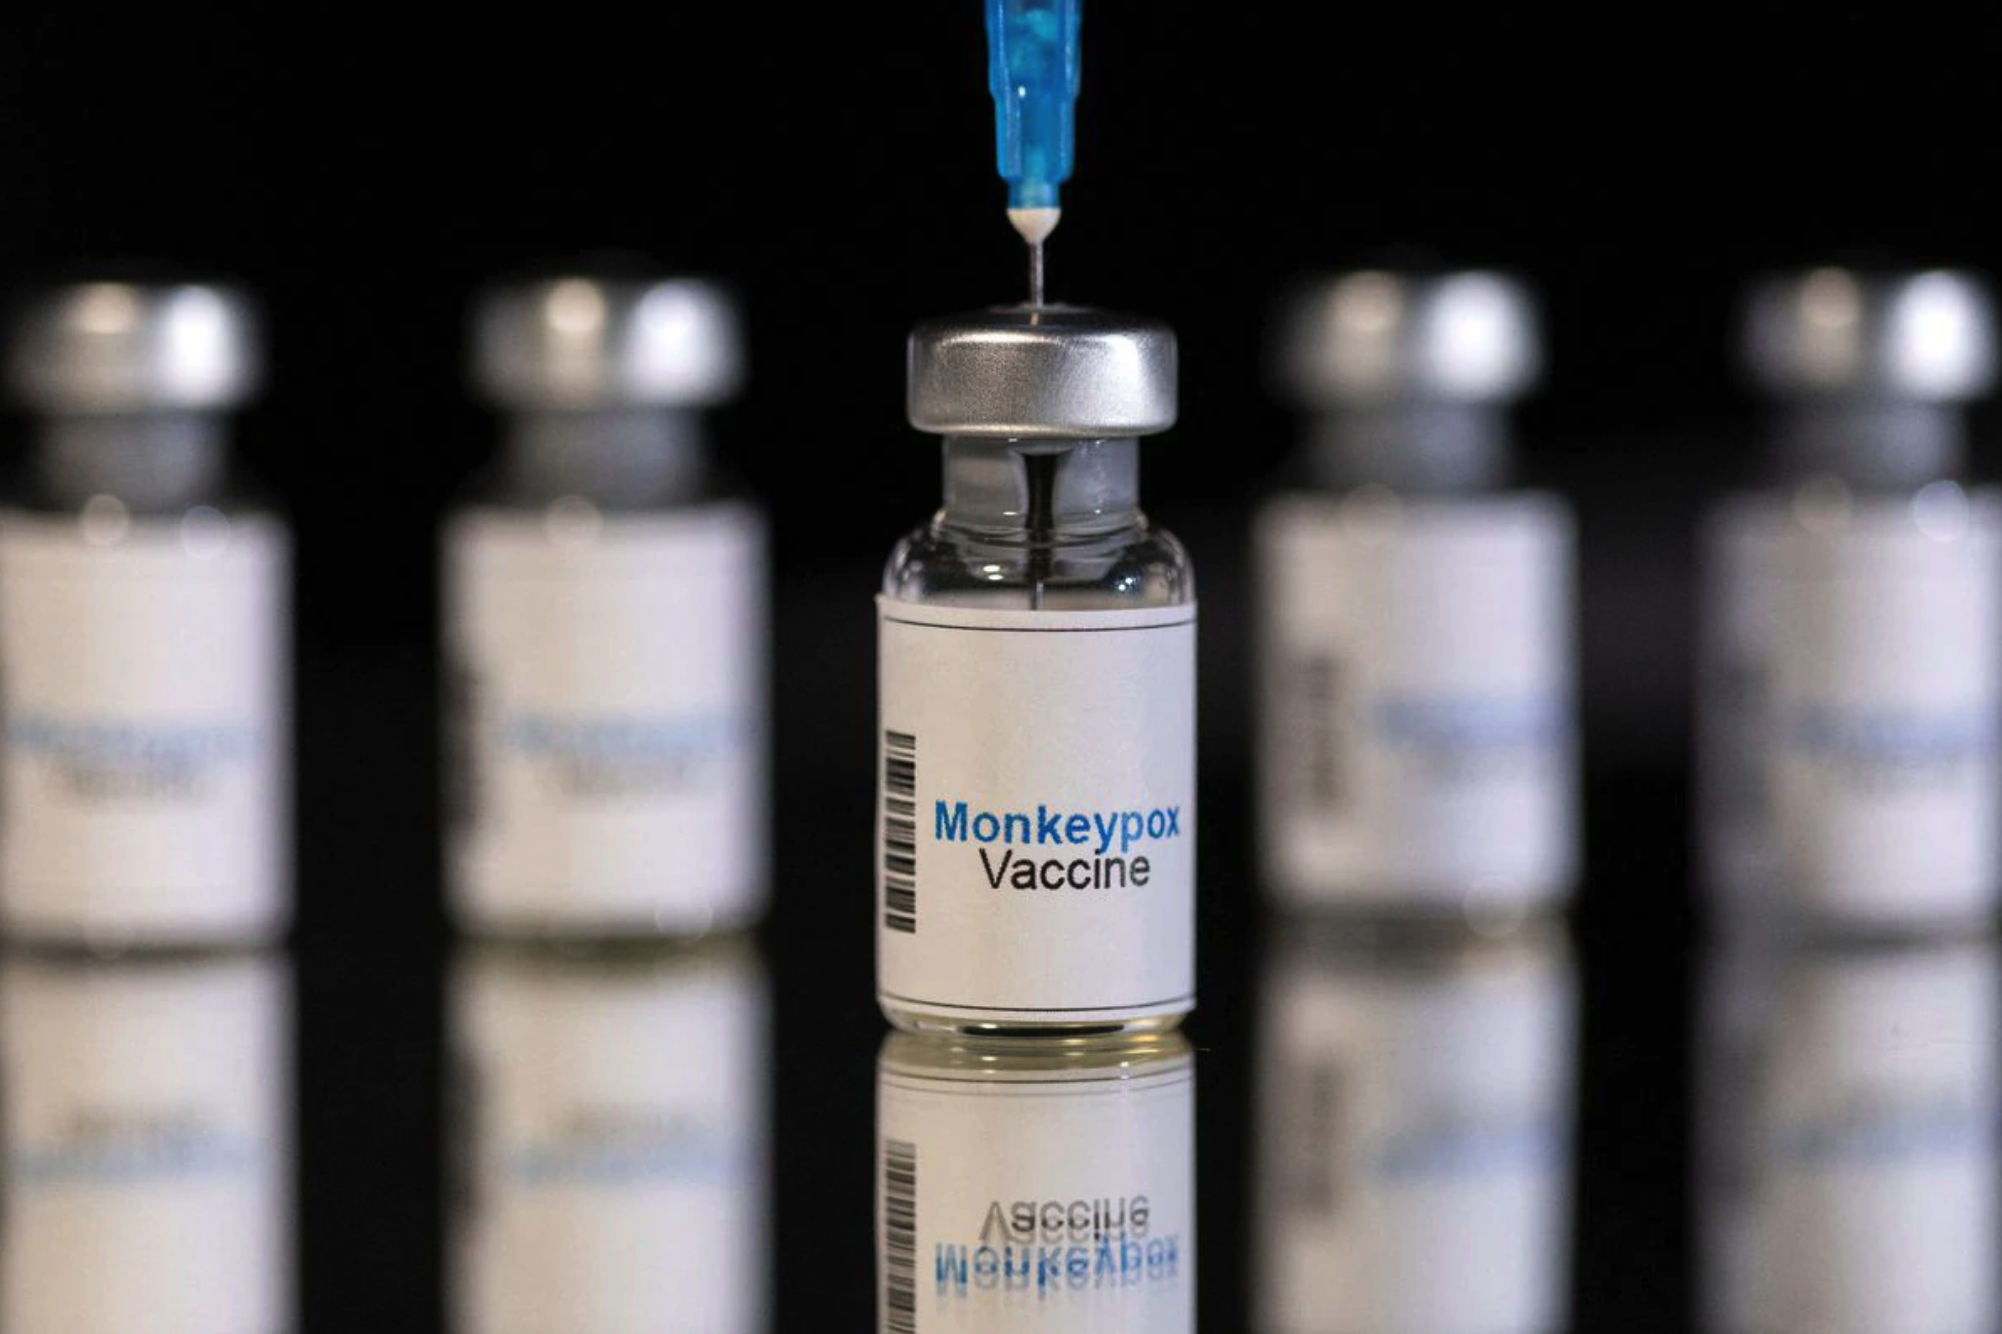 Vắc xin phòng đậu mùa khỉ: Vắc xin phòng đậu mùa khỉ là cách phòng ngừa tối ưu nhất đối với căn bệnh này. Vậy vắc xin này hoạt động như thế nào? Hãy xem hình ảnh liên quan để tìm hiểu ngay!